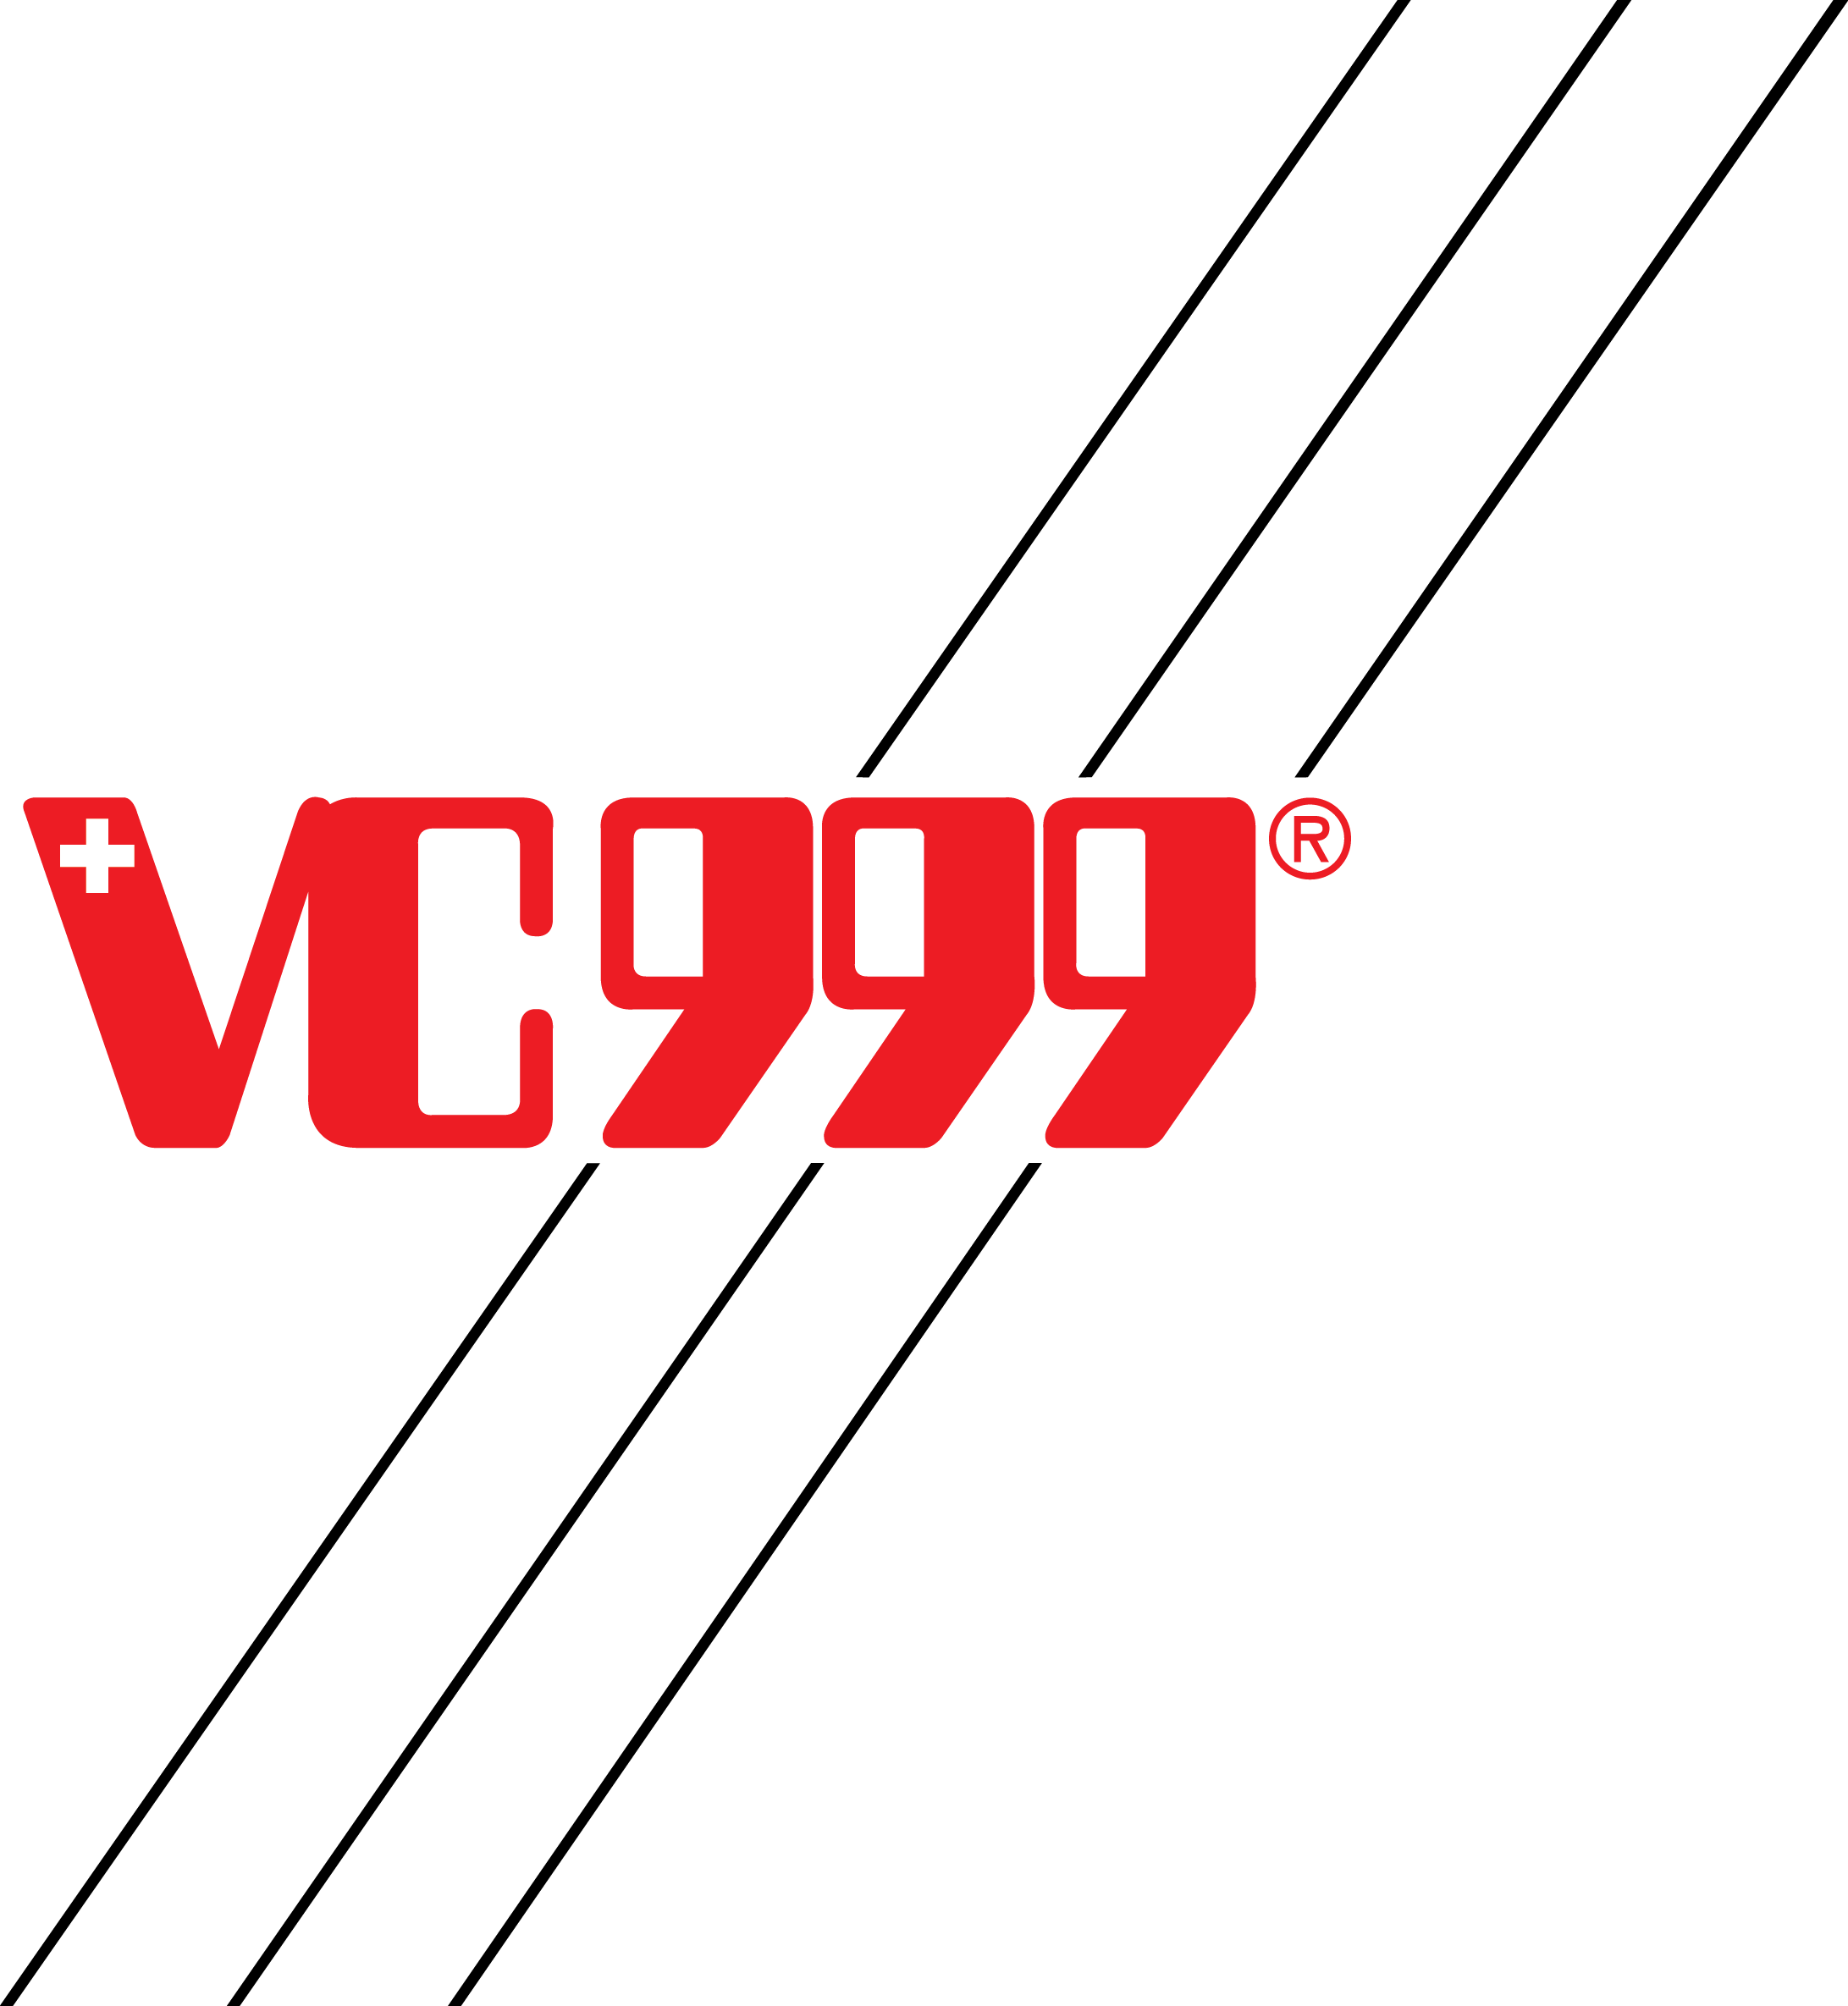 VC999